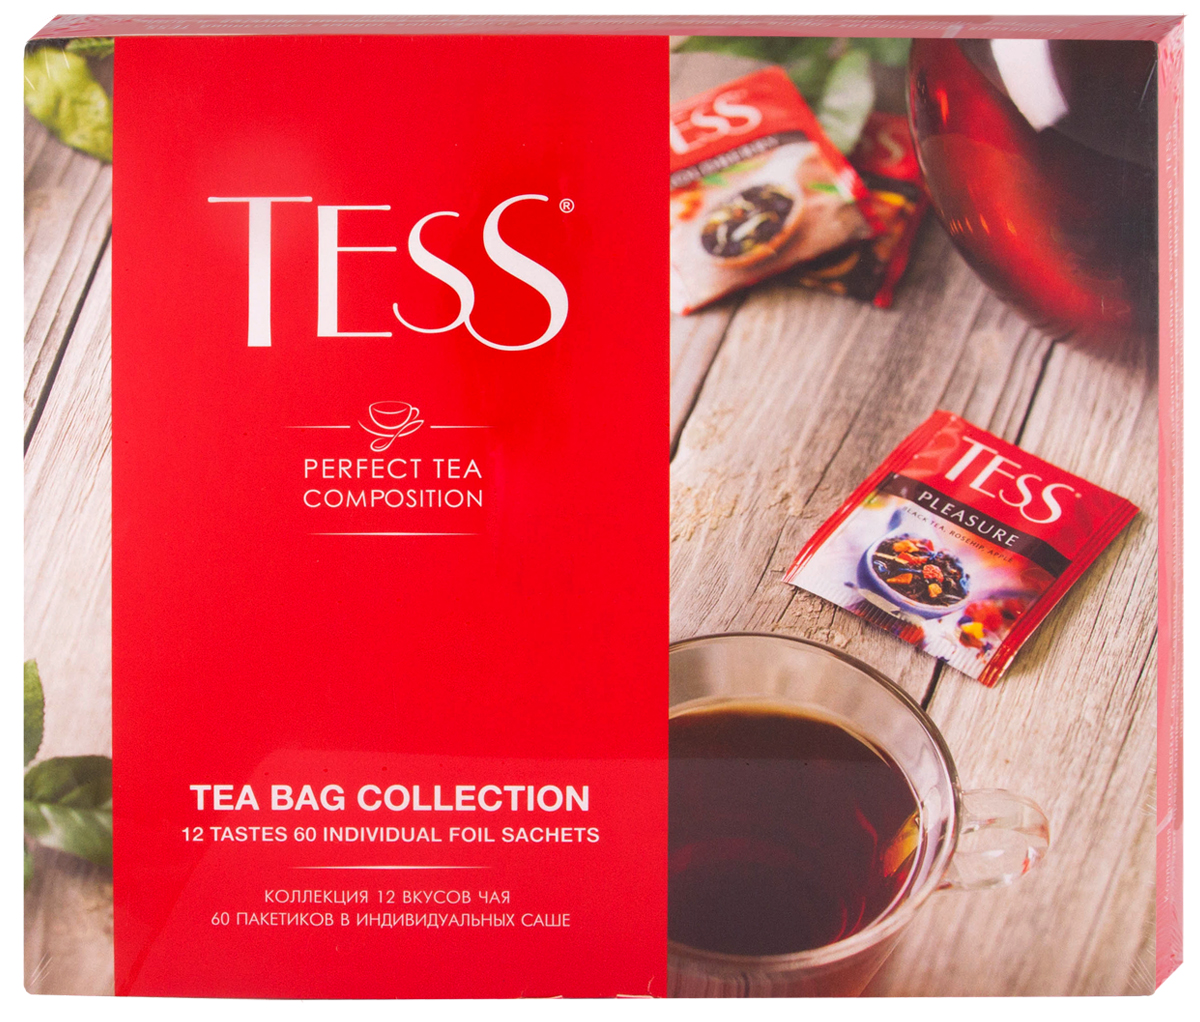 Коллекция чая и чайных напитков Тесс